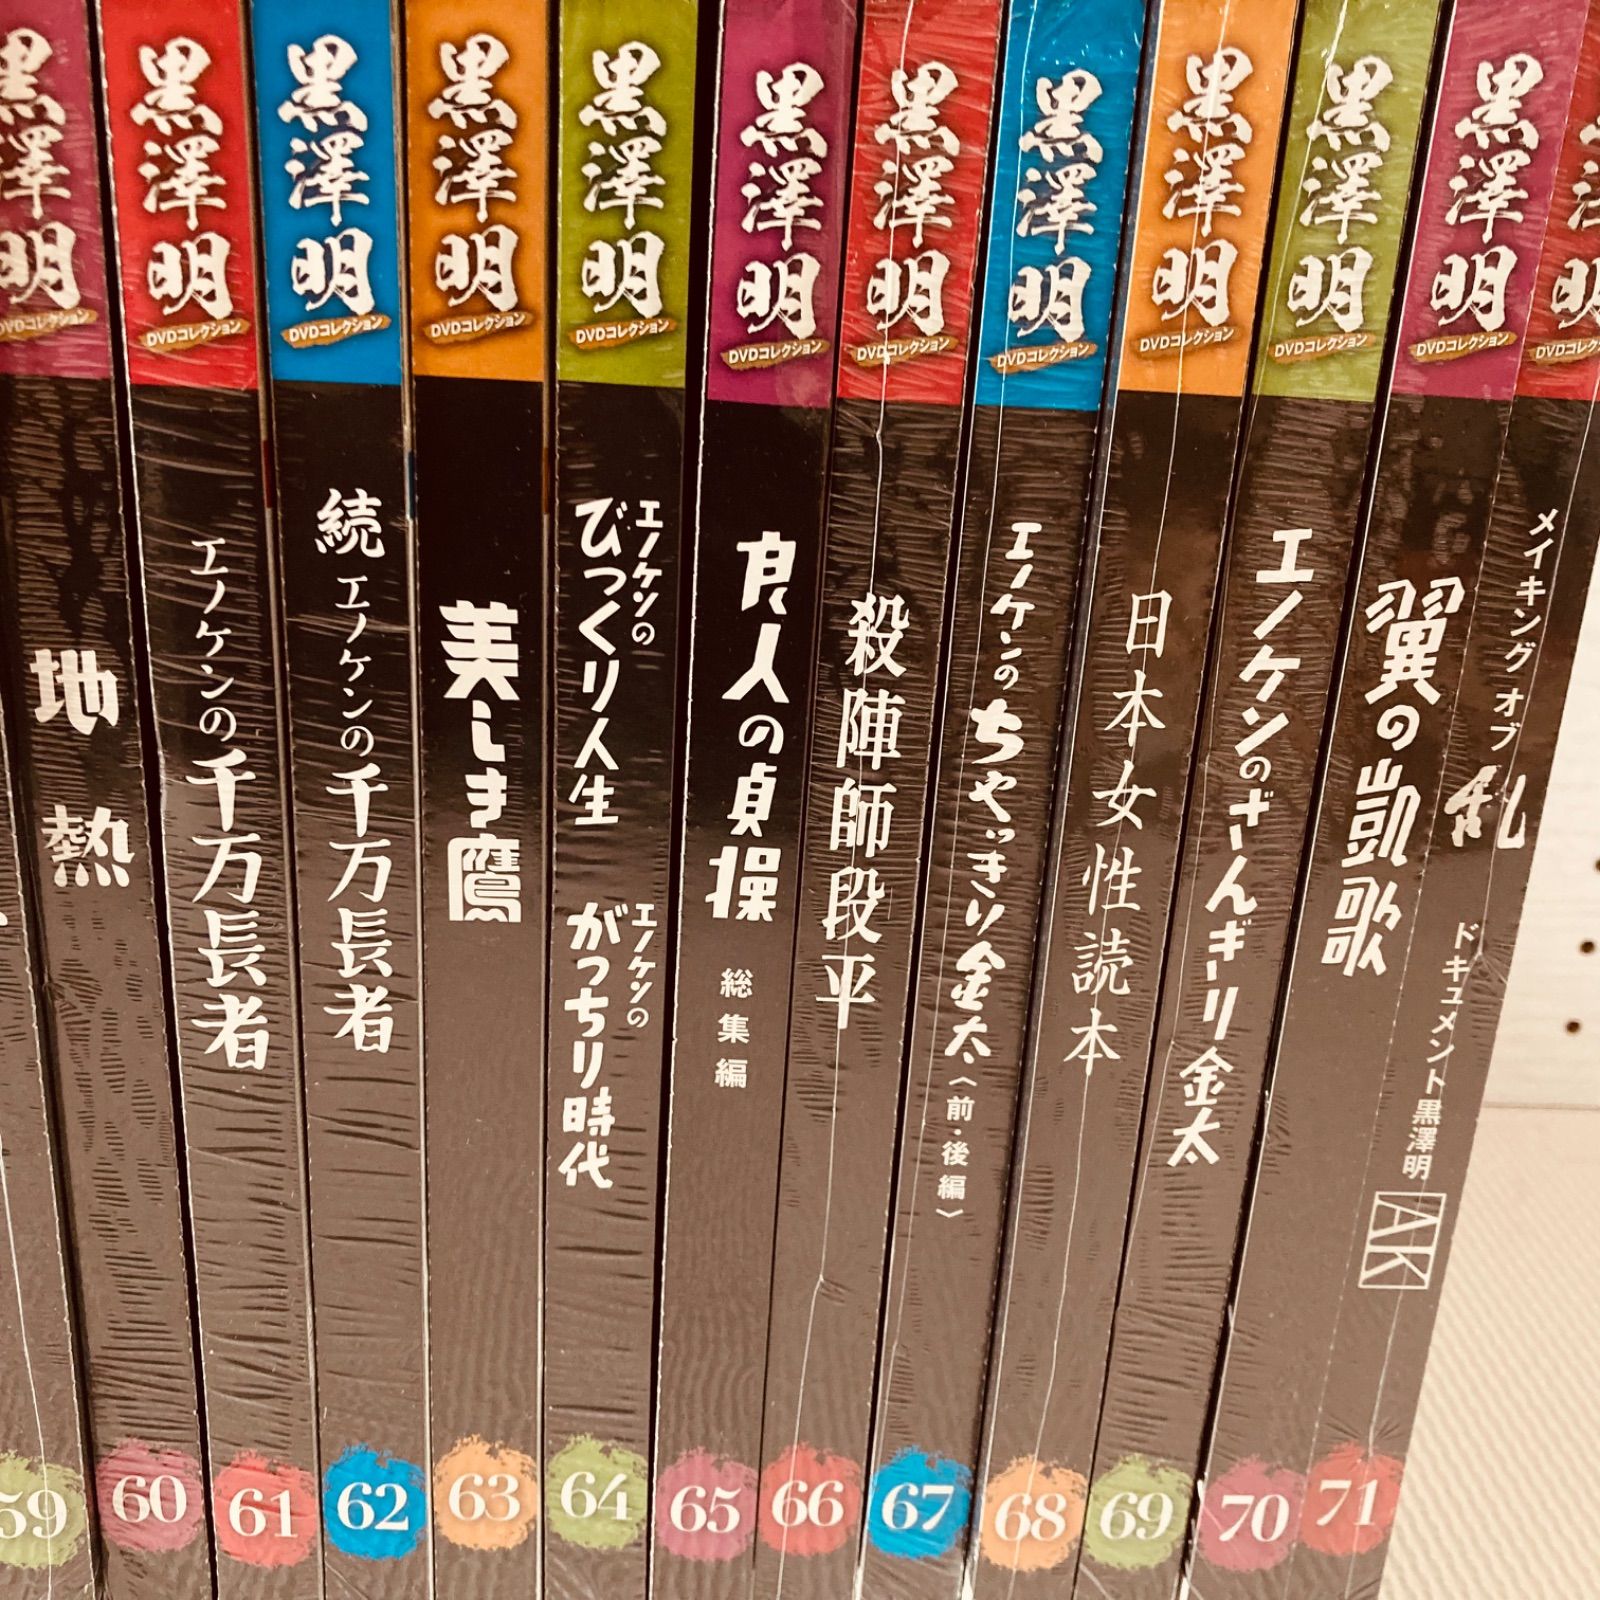 黒澤明DVDコレクション全71巻セット - 外国映画